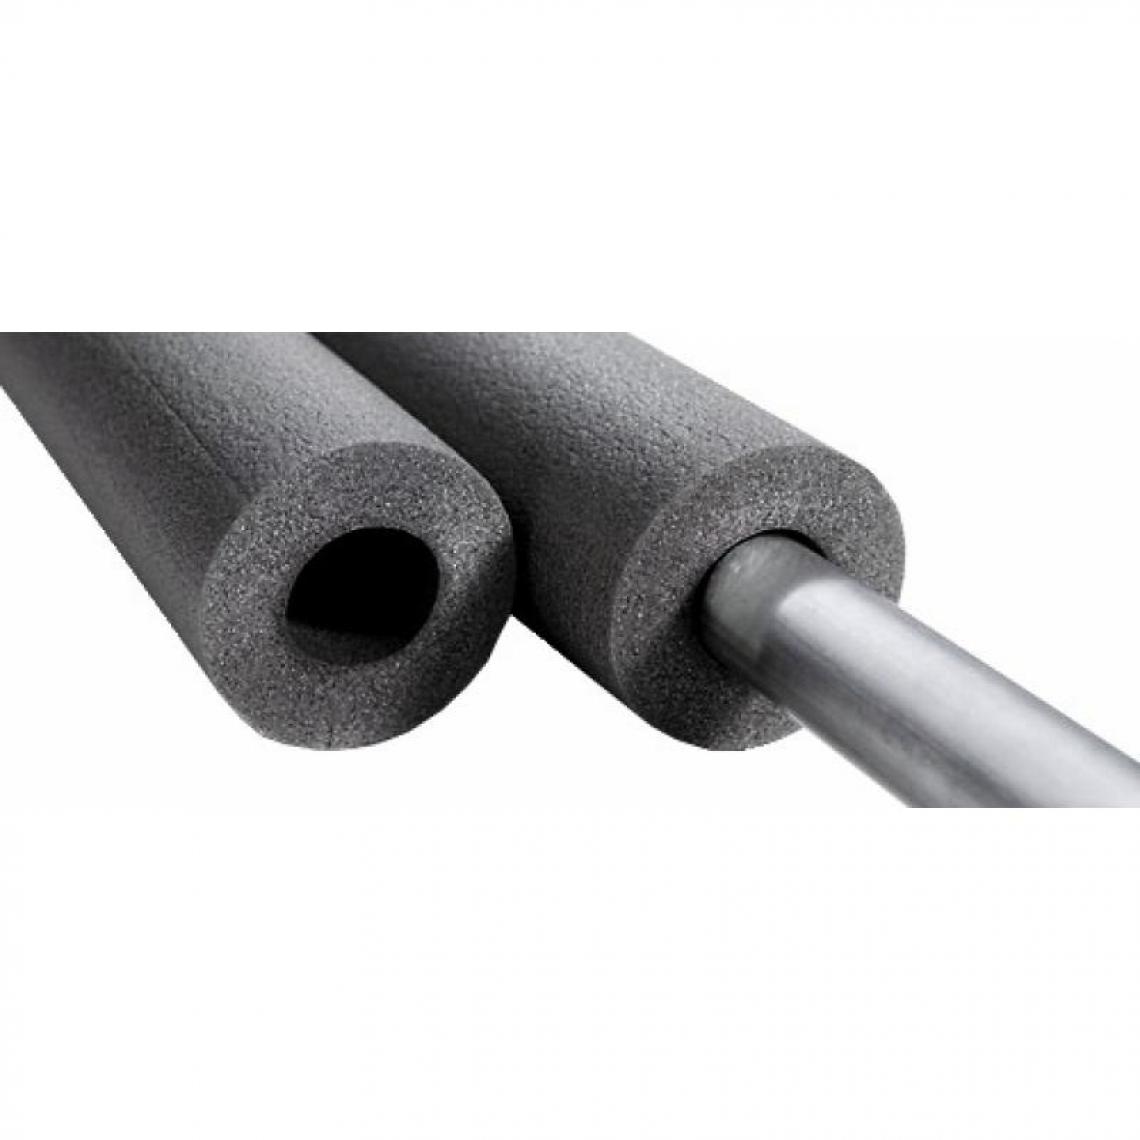 NMC - Tube isolant préfendu Climaflex, épaisseur 20 mm, longueur 2 m, pour tuyaux diamètre 28 - Coudes et raccords PVC